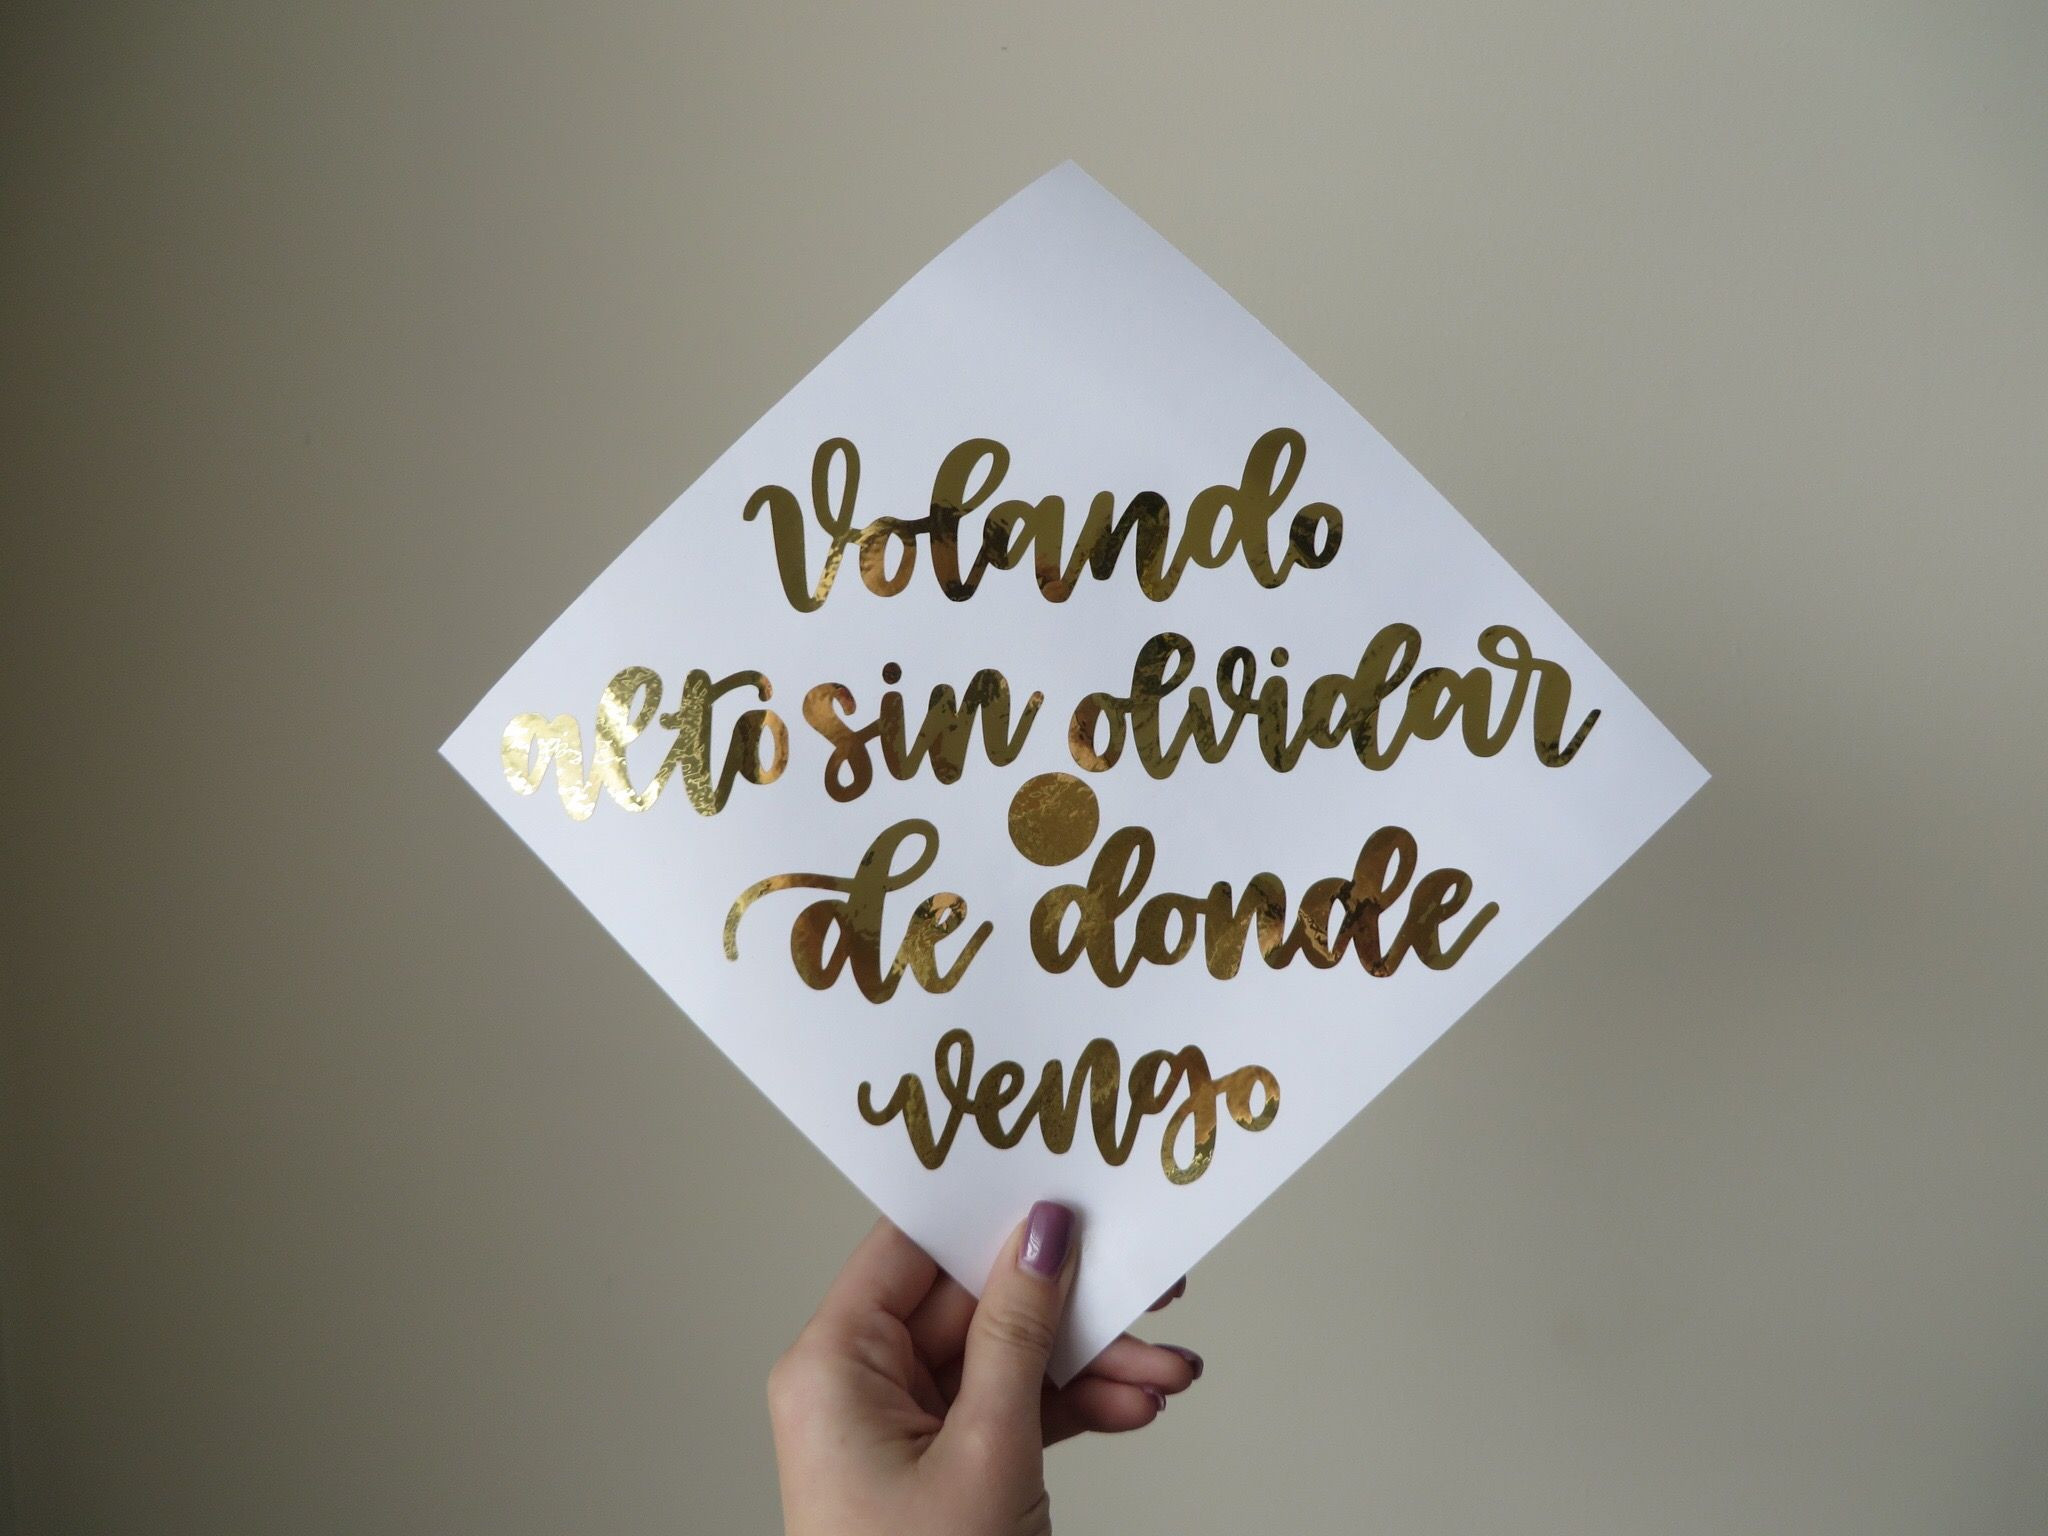 Graduation Quotes In Spanish
 Volando alto sin olvidar de donde vengo custom